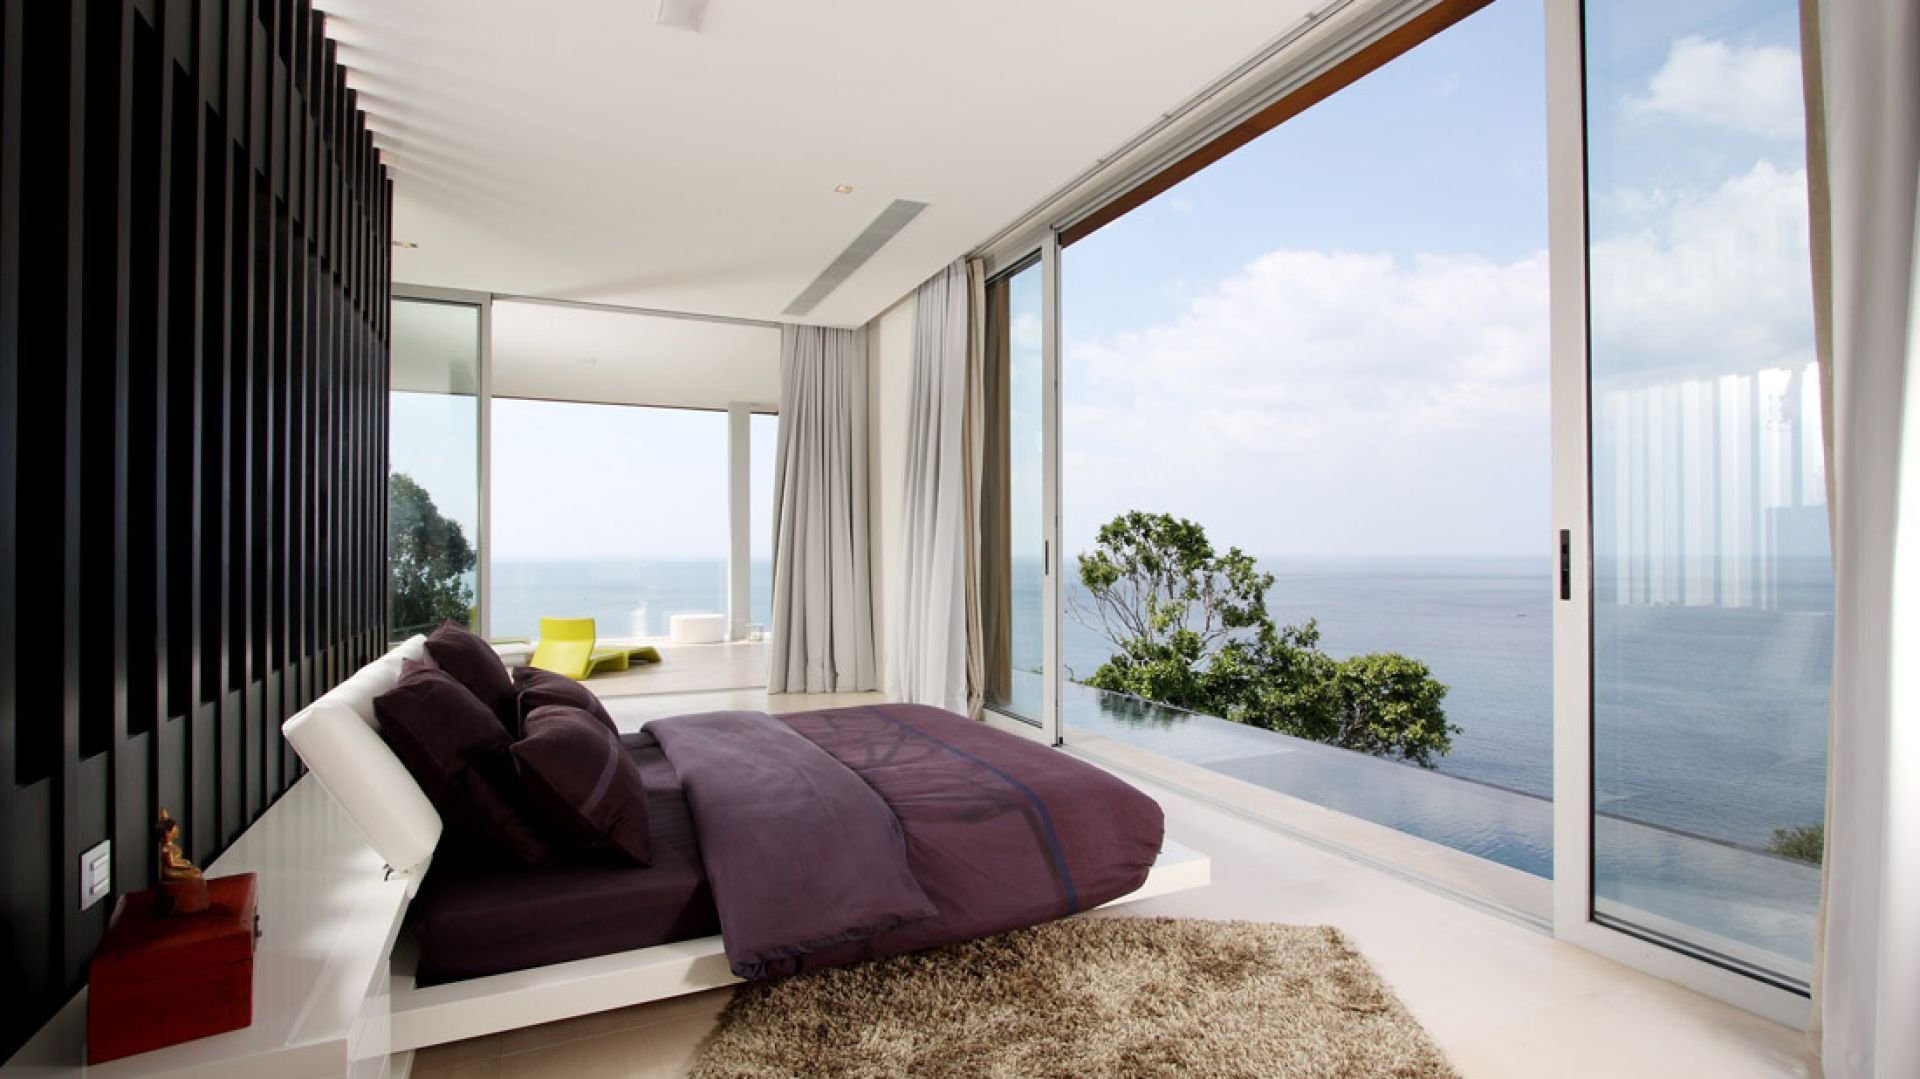 Виды квартир. Спальня с панорамными окнами. Вид со спальни с панорамными окнами. Спальня с красивым видом. Спальня с панорамными окнами с видом на море.